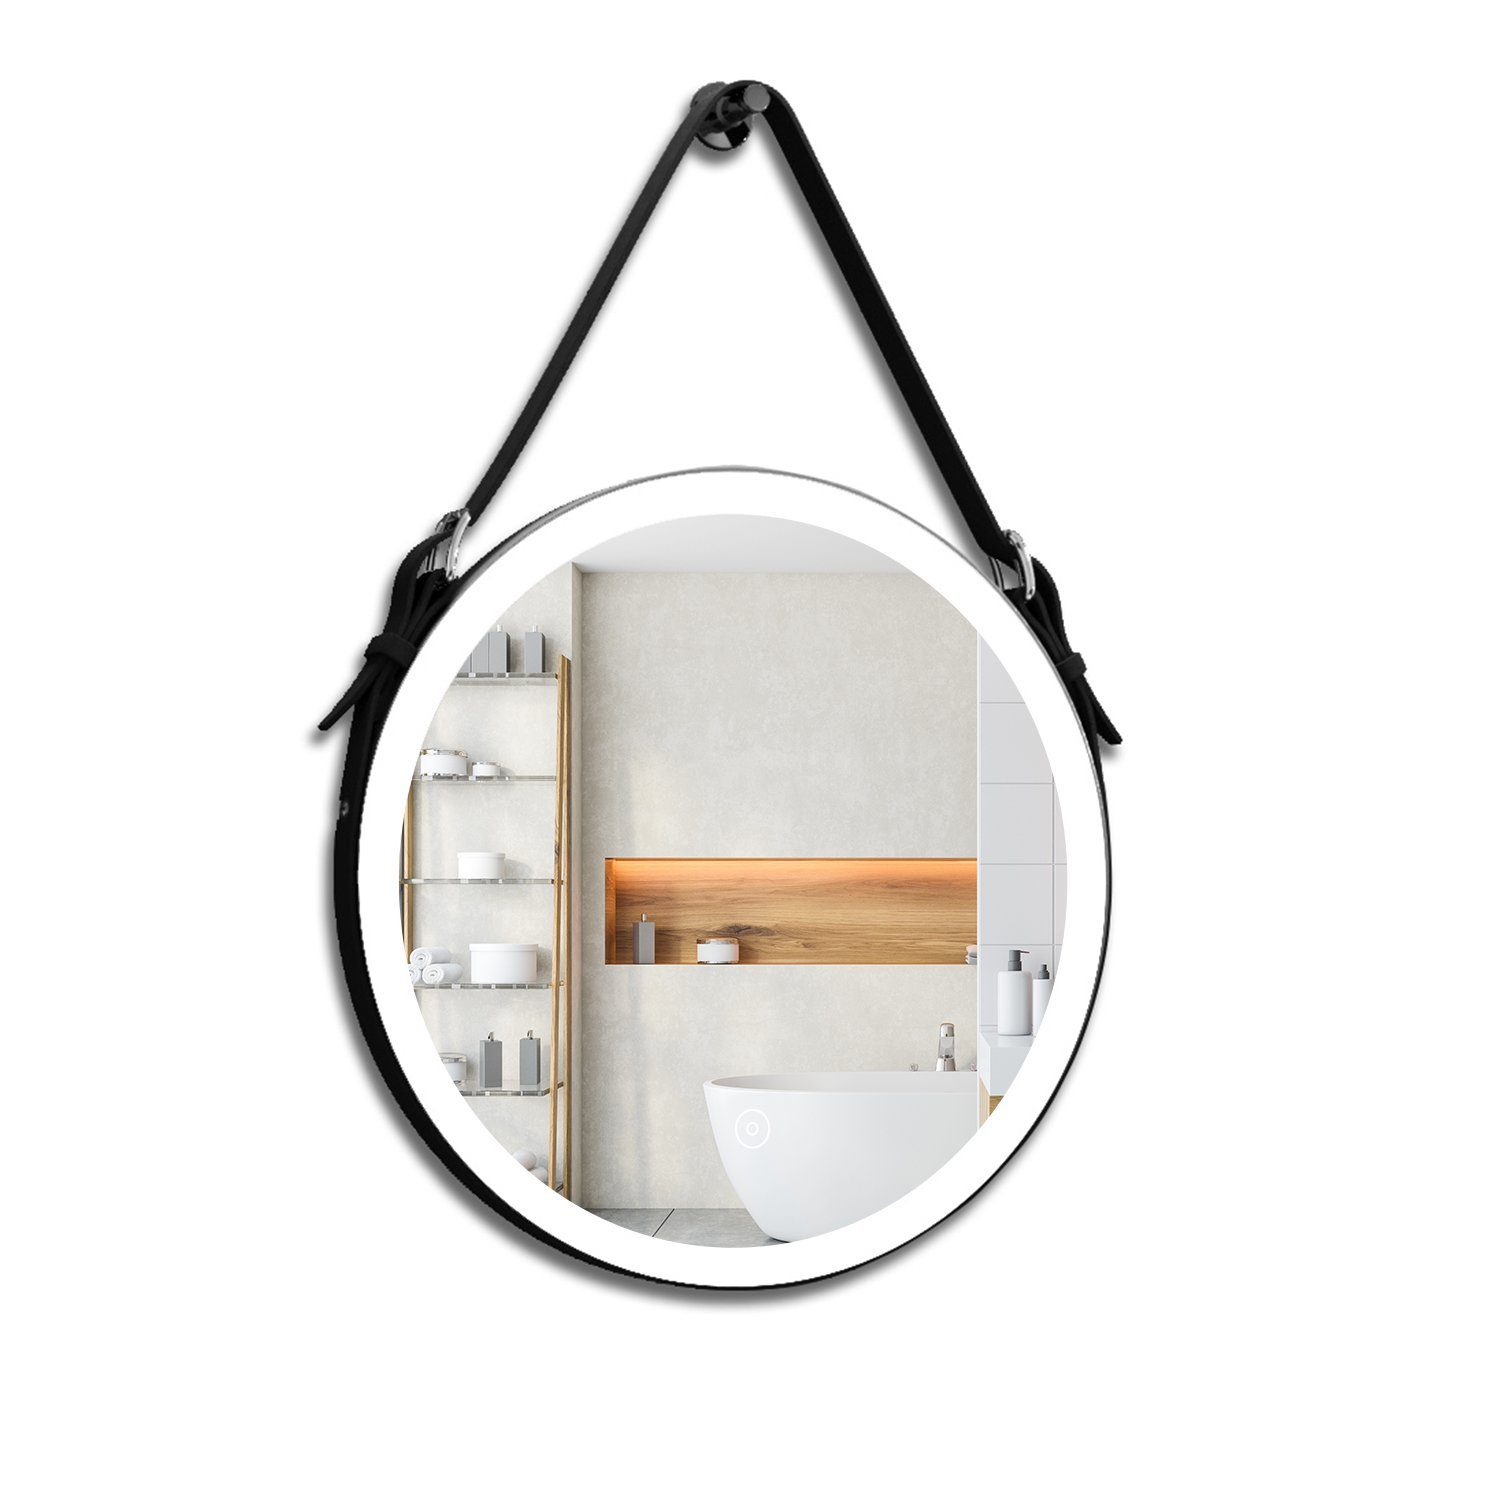 SONNI Badspiegel Rund Badspiegel mit LED Beleuchtung Badezimmerspiegel Ø 60 cm Touch, Beschlagfrei,Verstellbarer, Touchschalter Modern Schminkspiegel